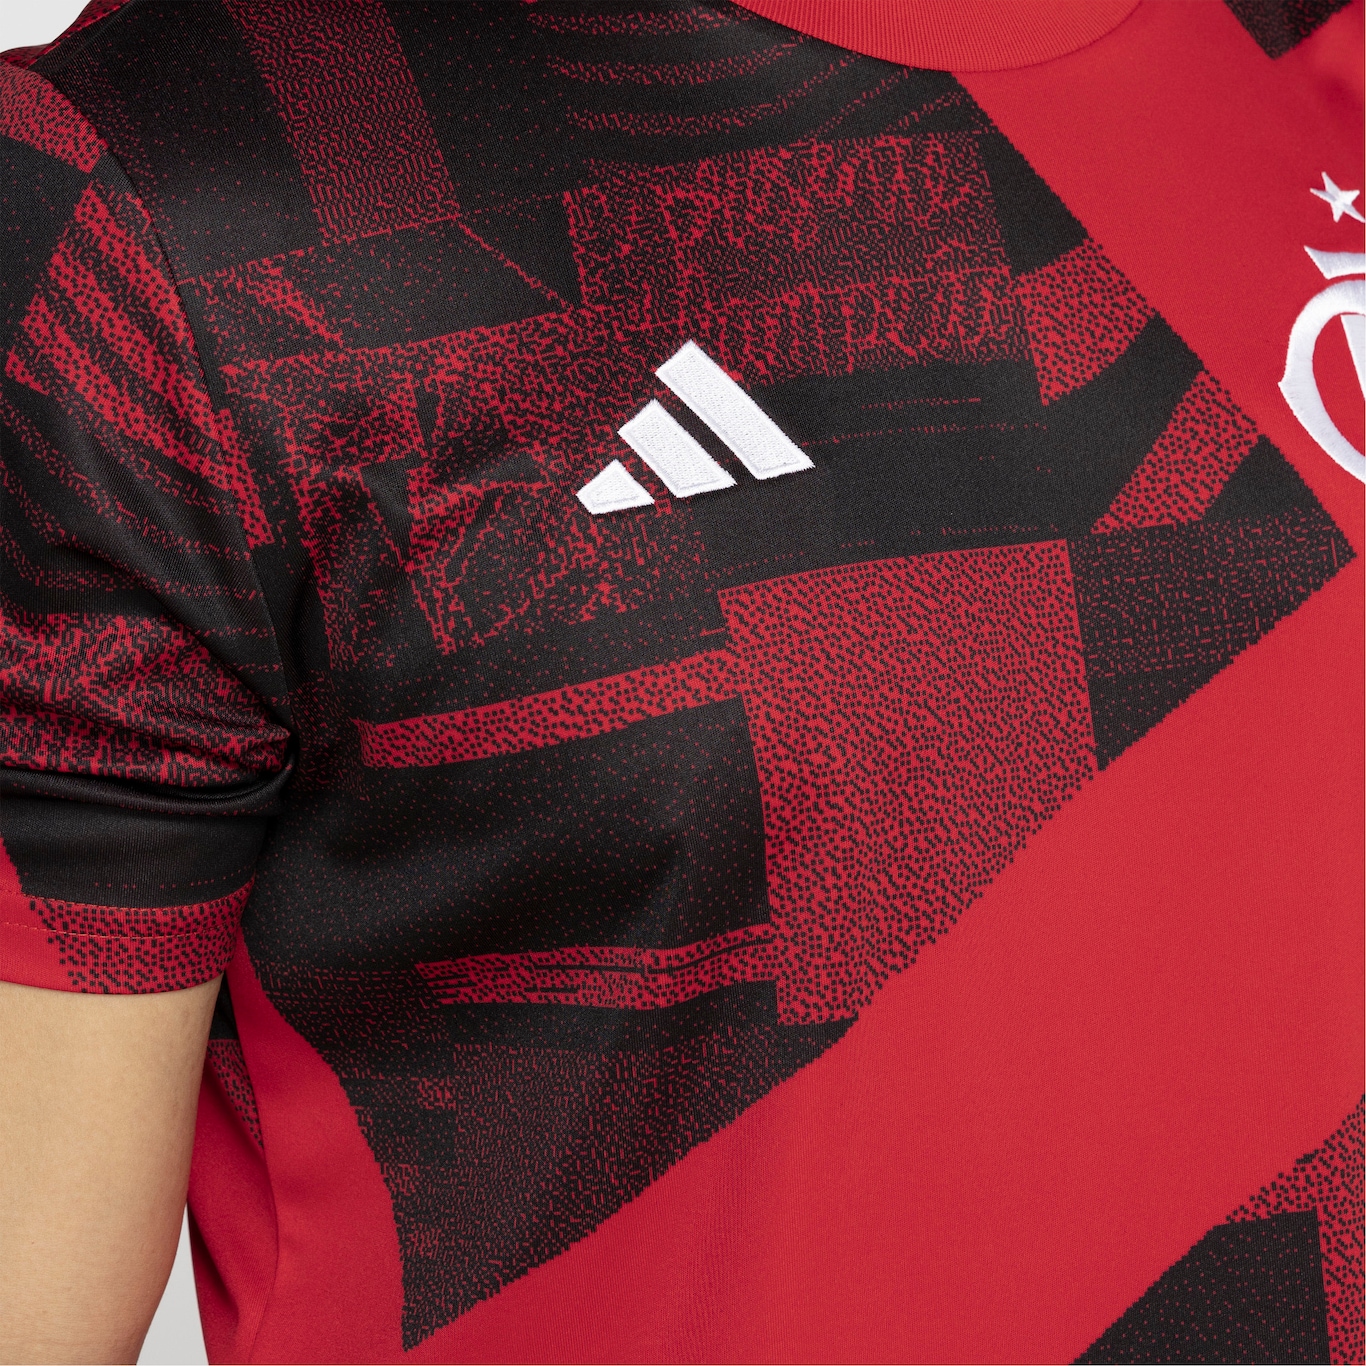 Camisa Pré-Jogo do Flamengo 23 adidas - Masculina